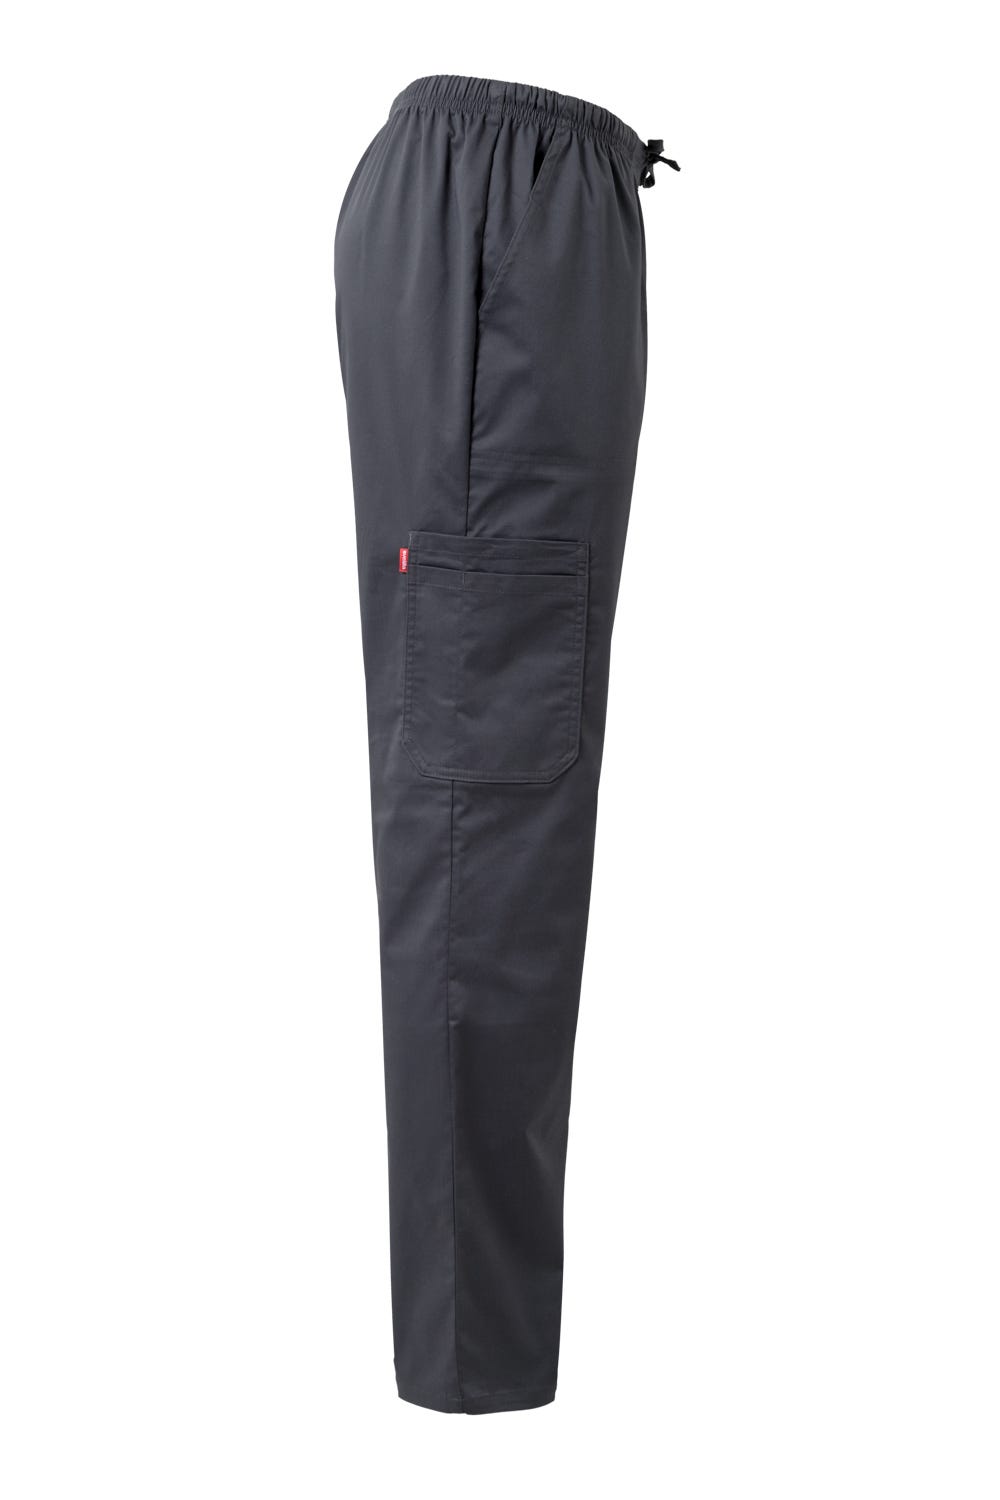 Pantalon Premium Comfort Stretch Gris foncé